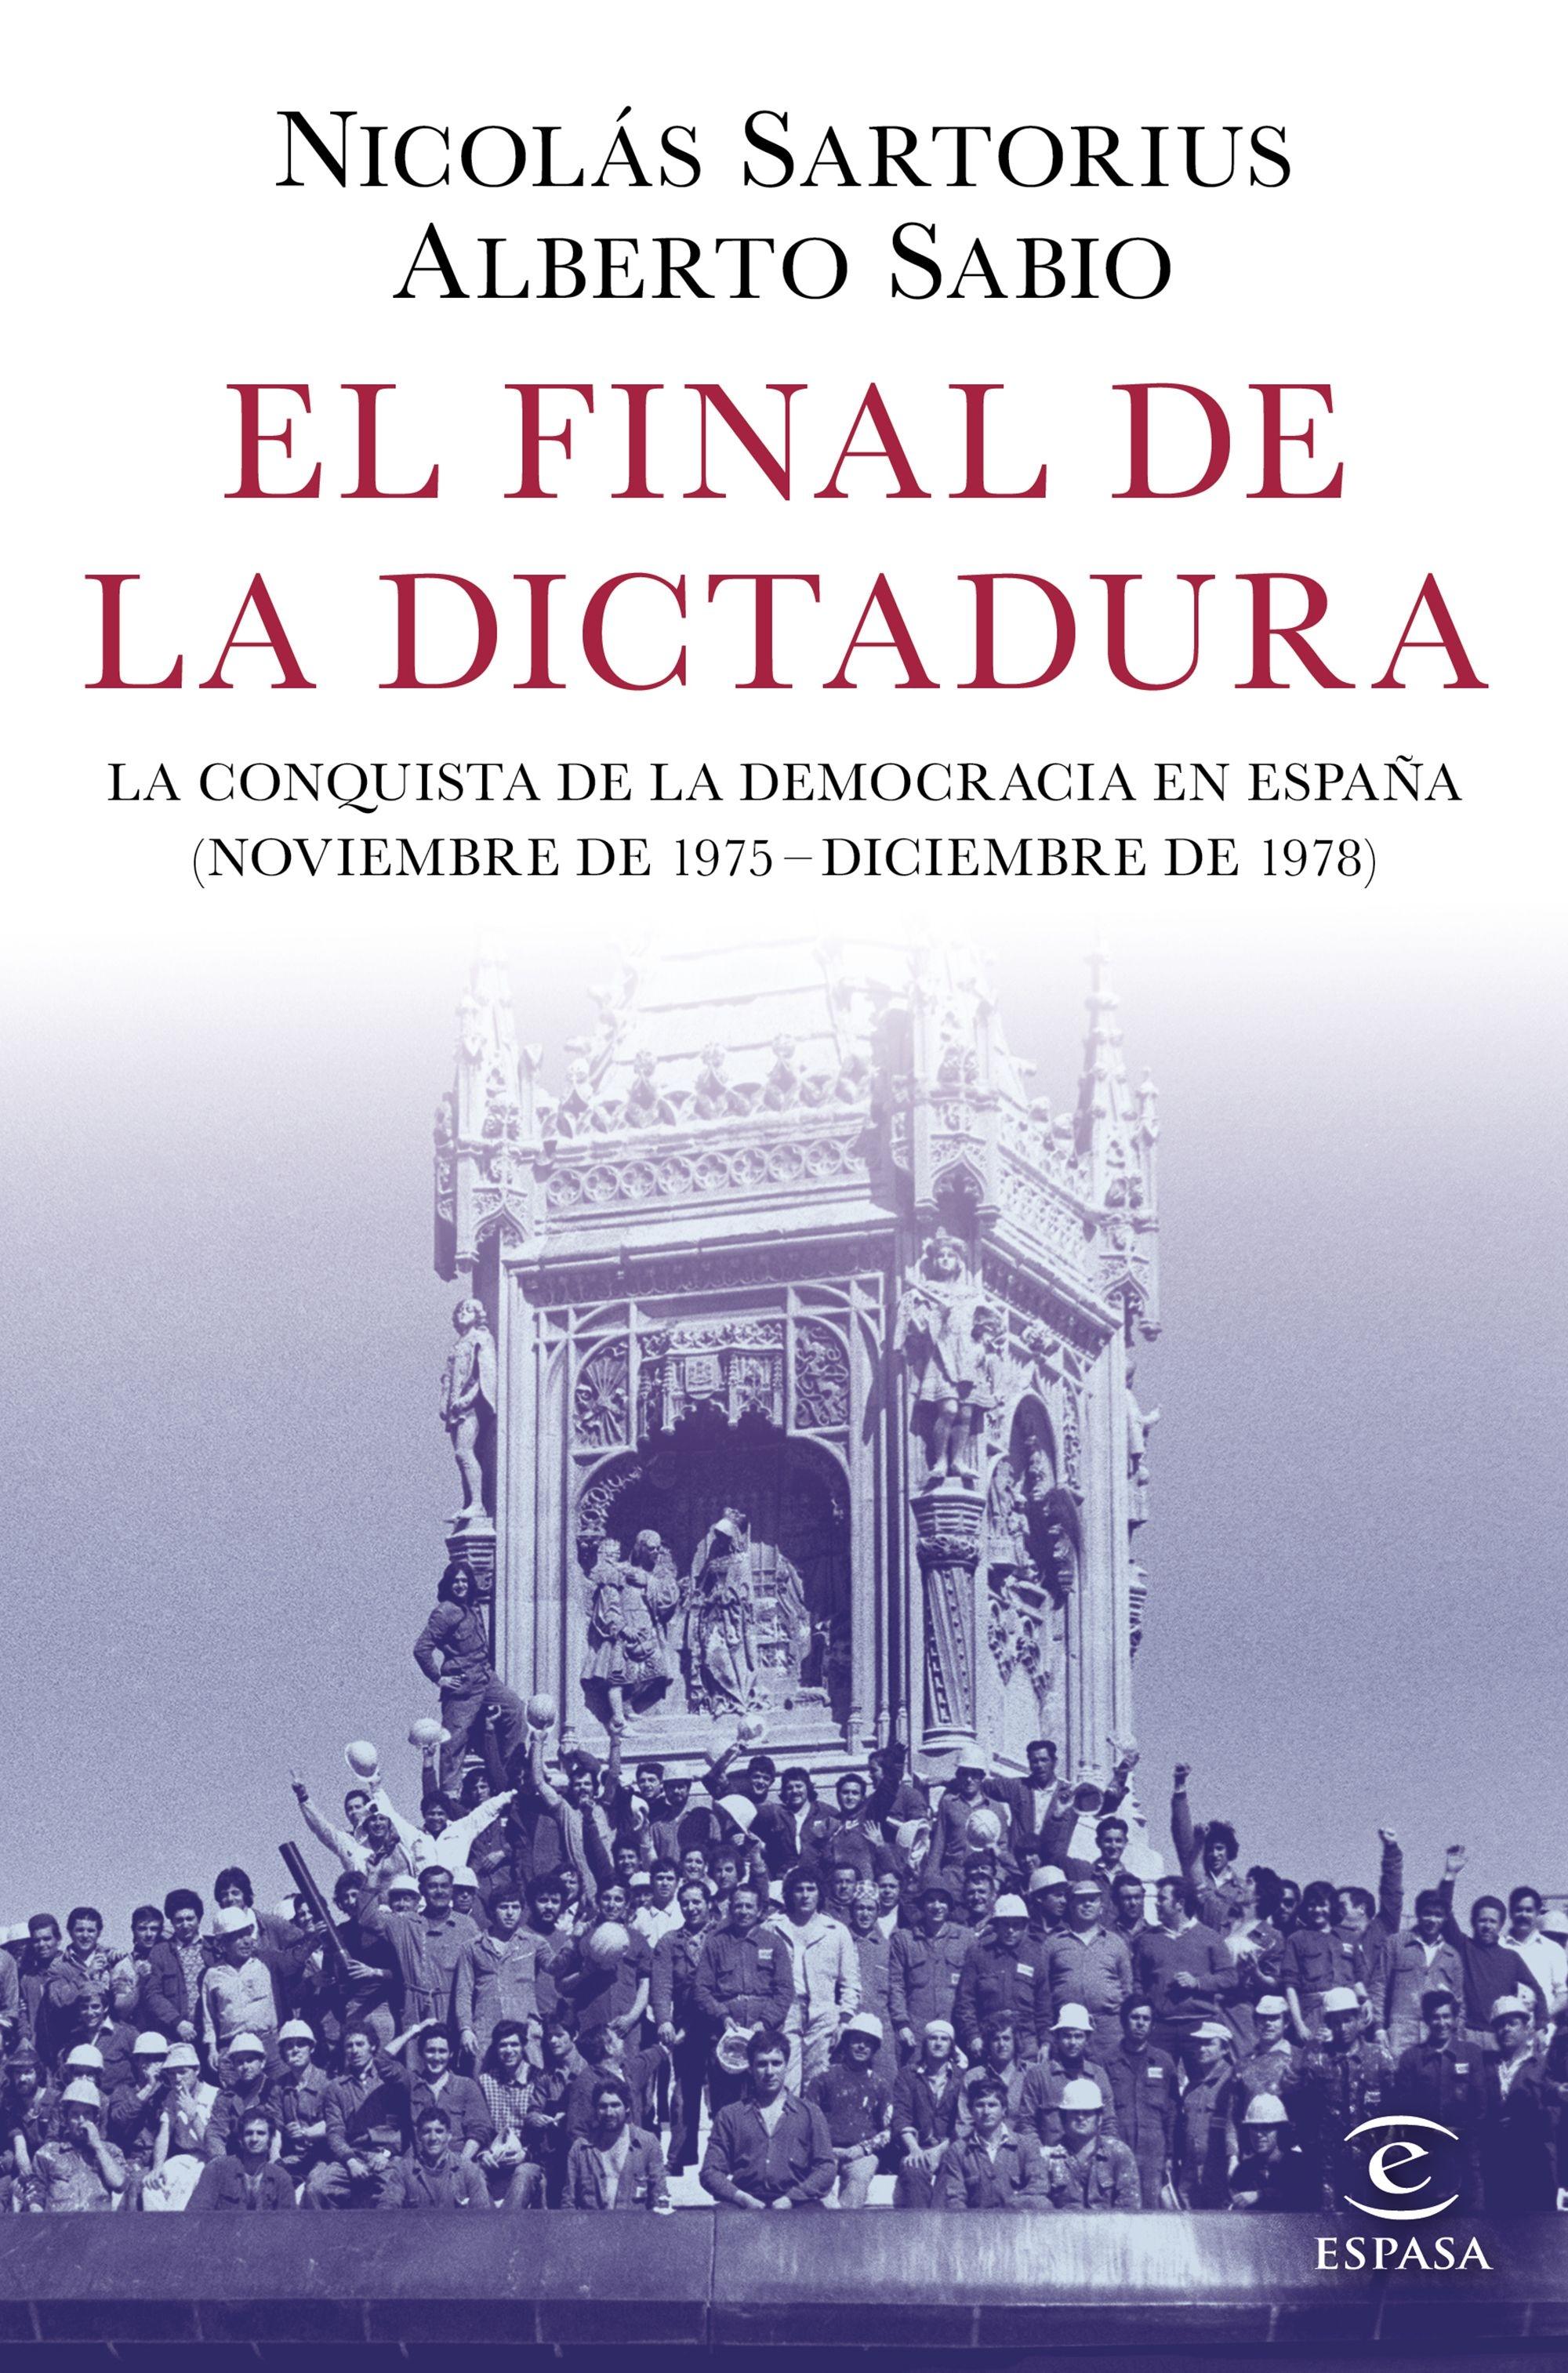 El final de la dictadura "La conquista de la democracia en España (Noviembre de 1975 - Diciembre d"